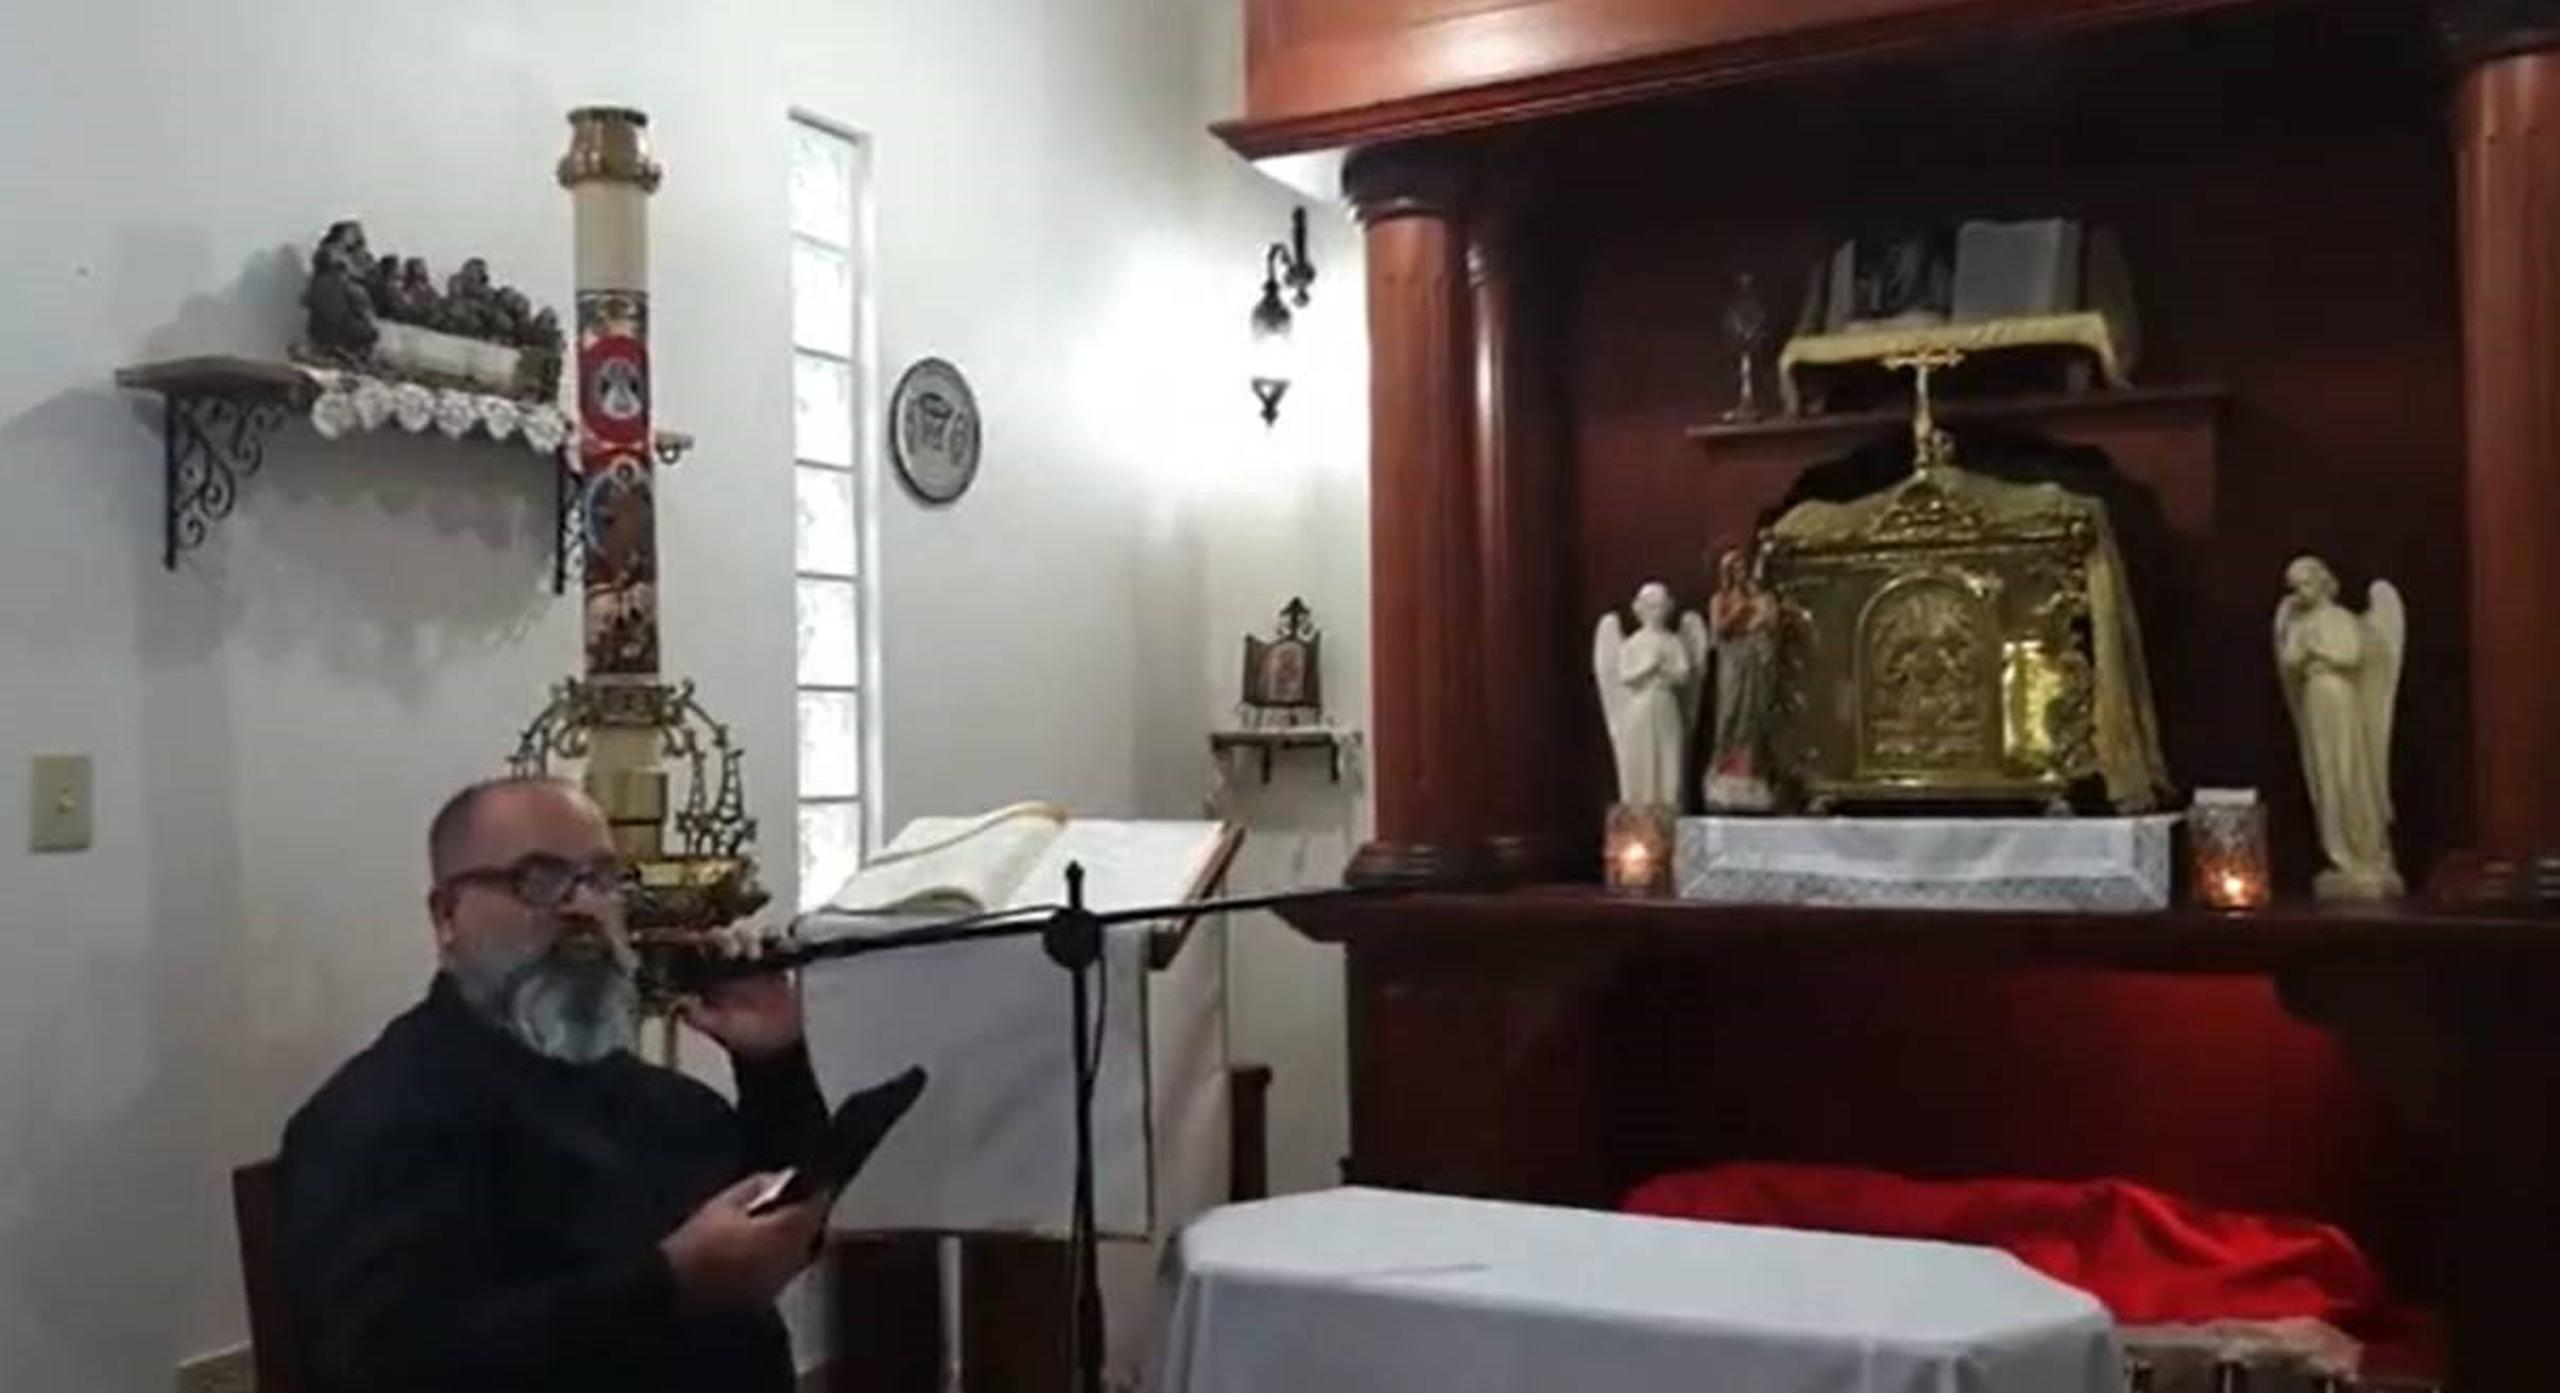 El sacerdote Winston Reinaldo Méndez Silvagnoli de la parroquia Corazón de Jesús, localizada en el barrio Sabanera de Ponce, continúo el rito religioso durante el temblor.